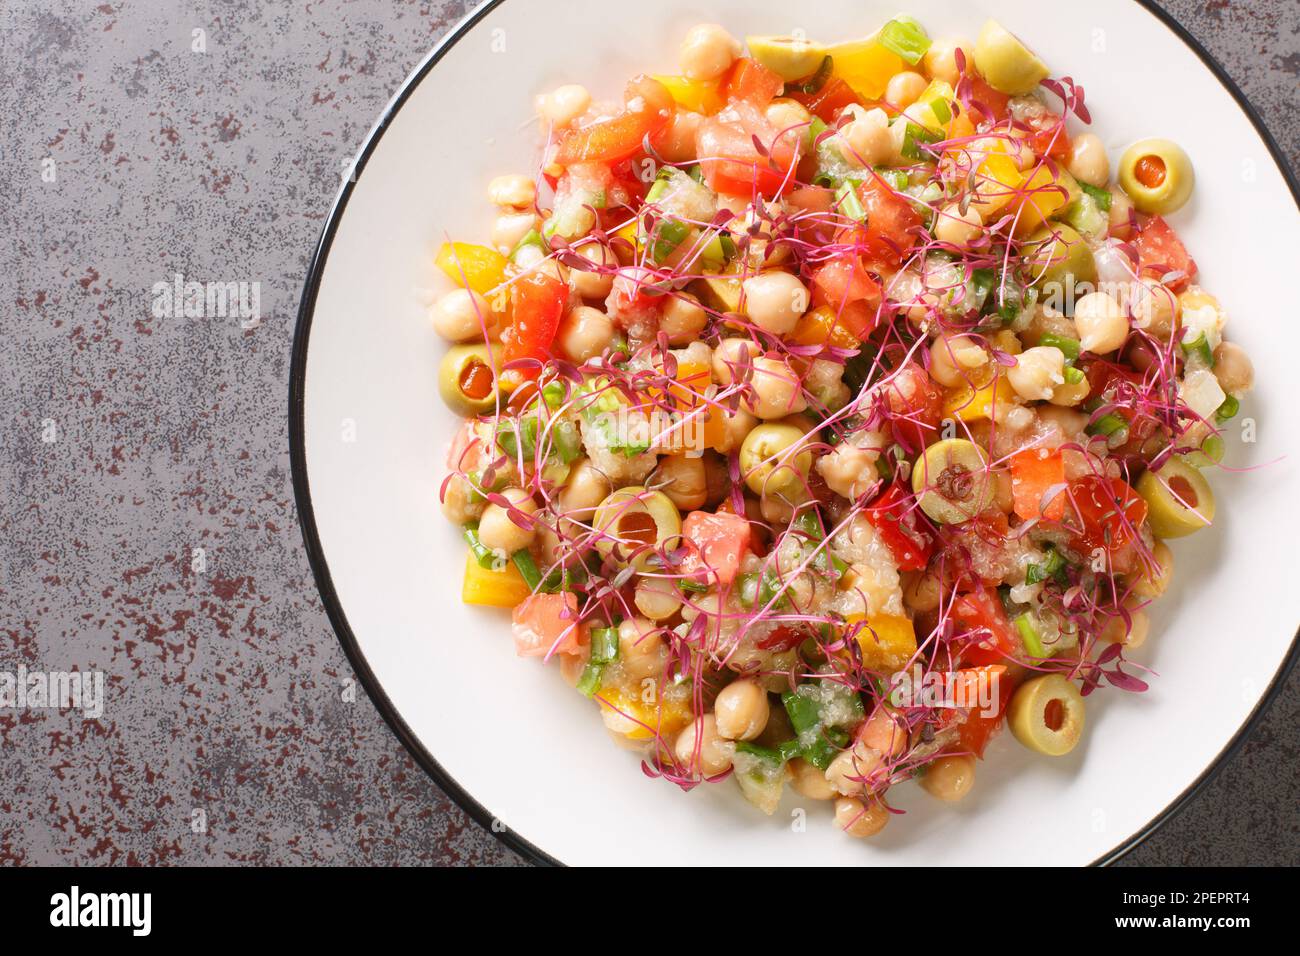 Ensalada de dieta mediterránea de garbanzos, pimientos, aceitunas, tomates, cebollas y amaranto microgreens y semillas de cerca en un plato sobre la mesa. Horizontal Foto de stock